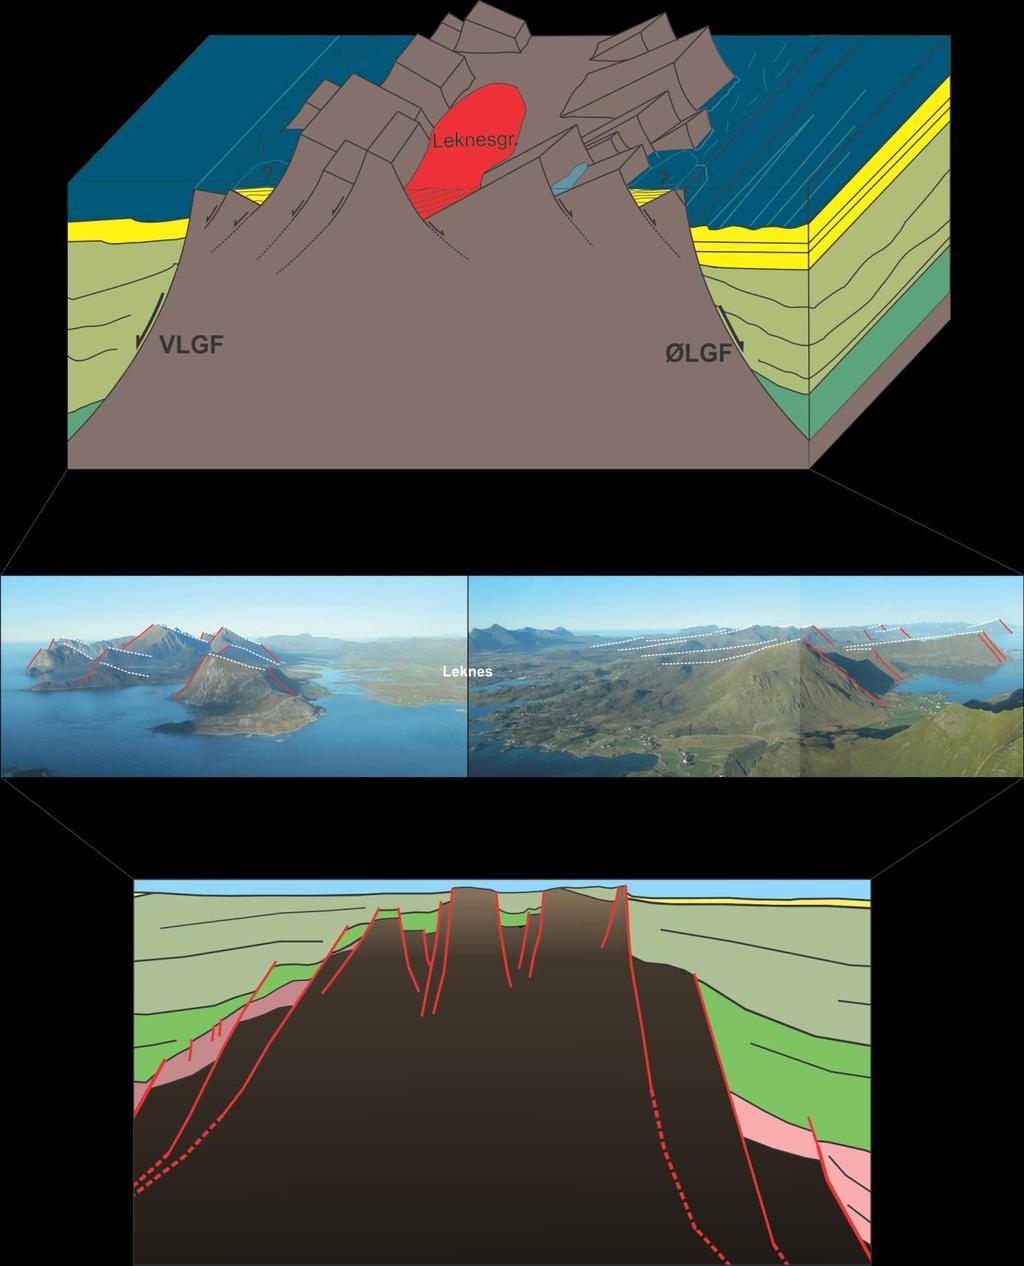 Figur 4.2 Konseptmodell av Lofotryggen ved Leknes basert på observasjoner i felt og seismiske tolkninger. Figur 4.